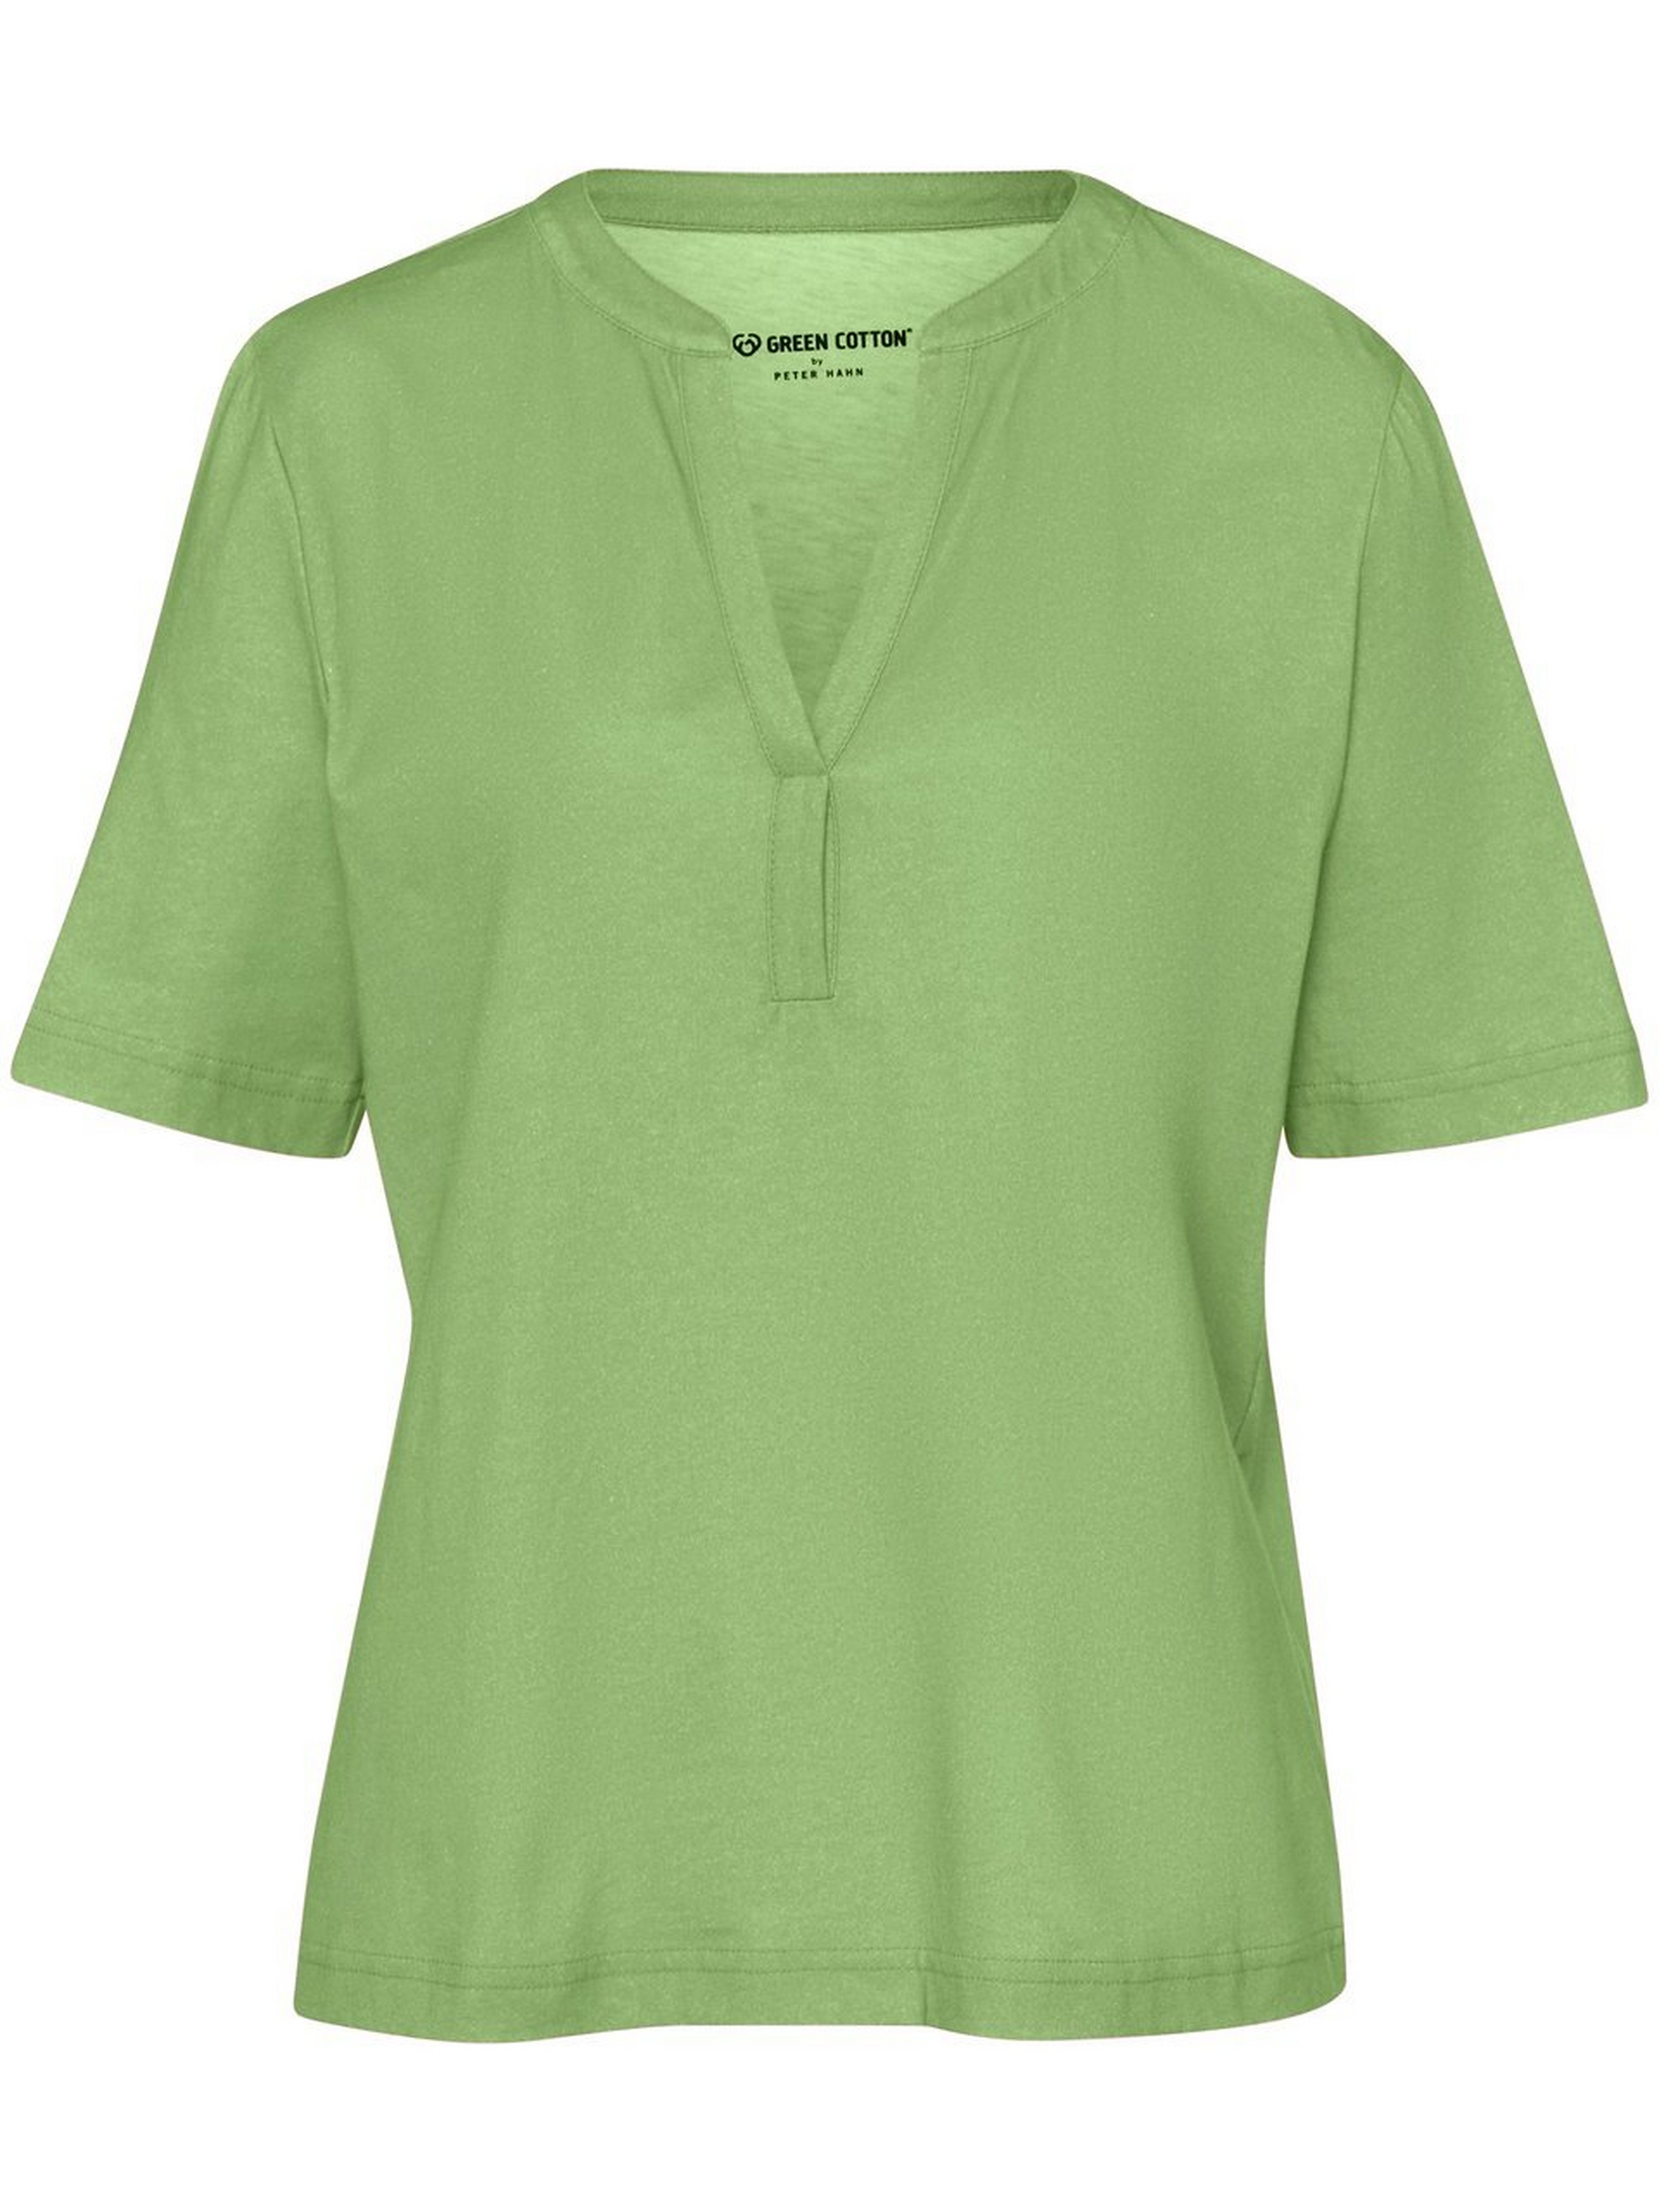 Overhemd Sine Van Green Cotton groen